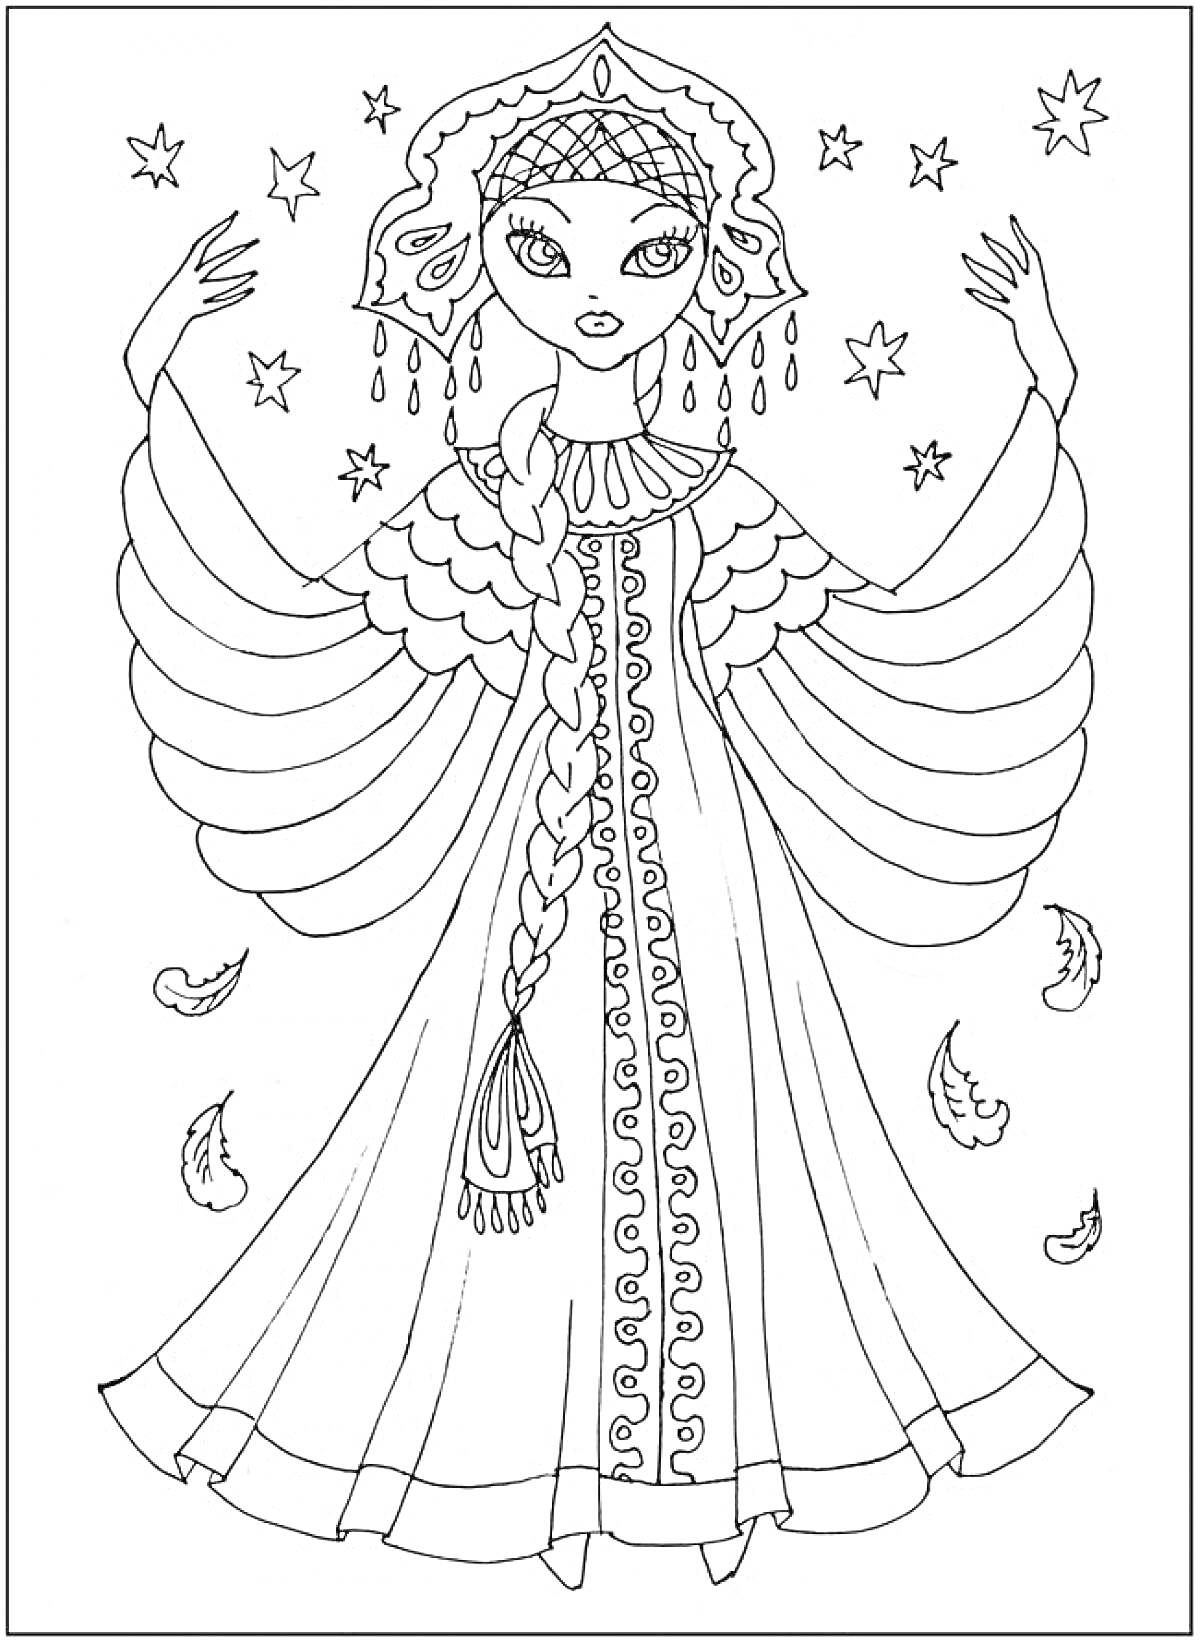 Царевна в традиционном головном уборе с длинной косой и узорным платьем, кружевное ожерелье, элементы в виде звезд и перьев